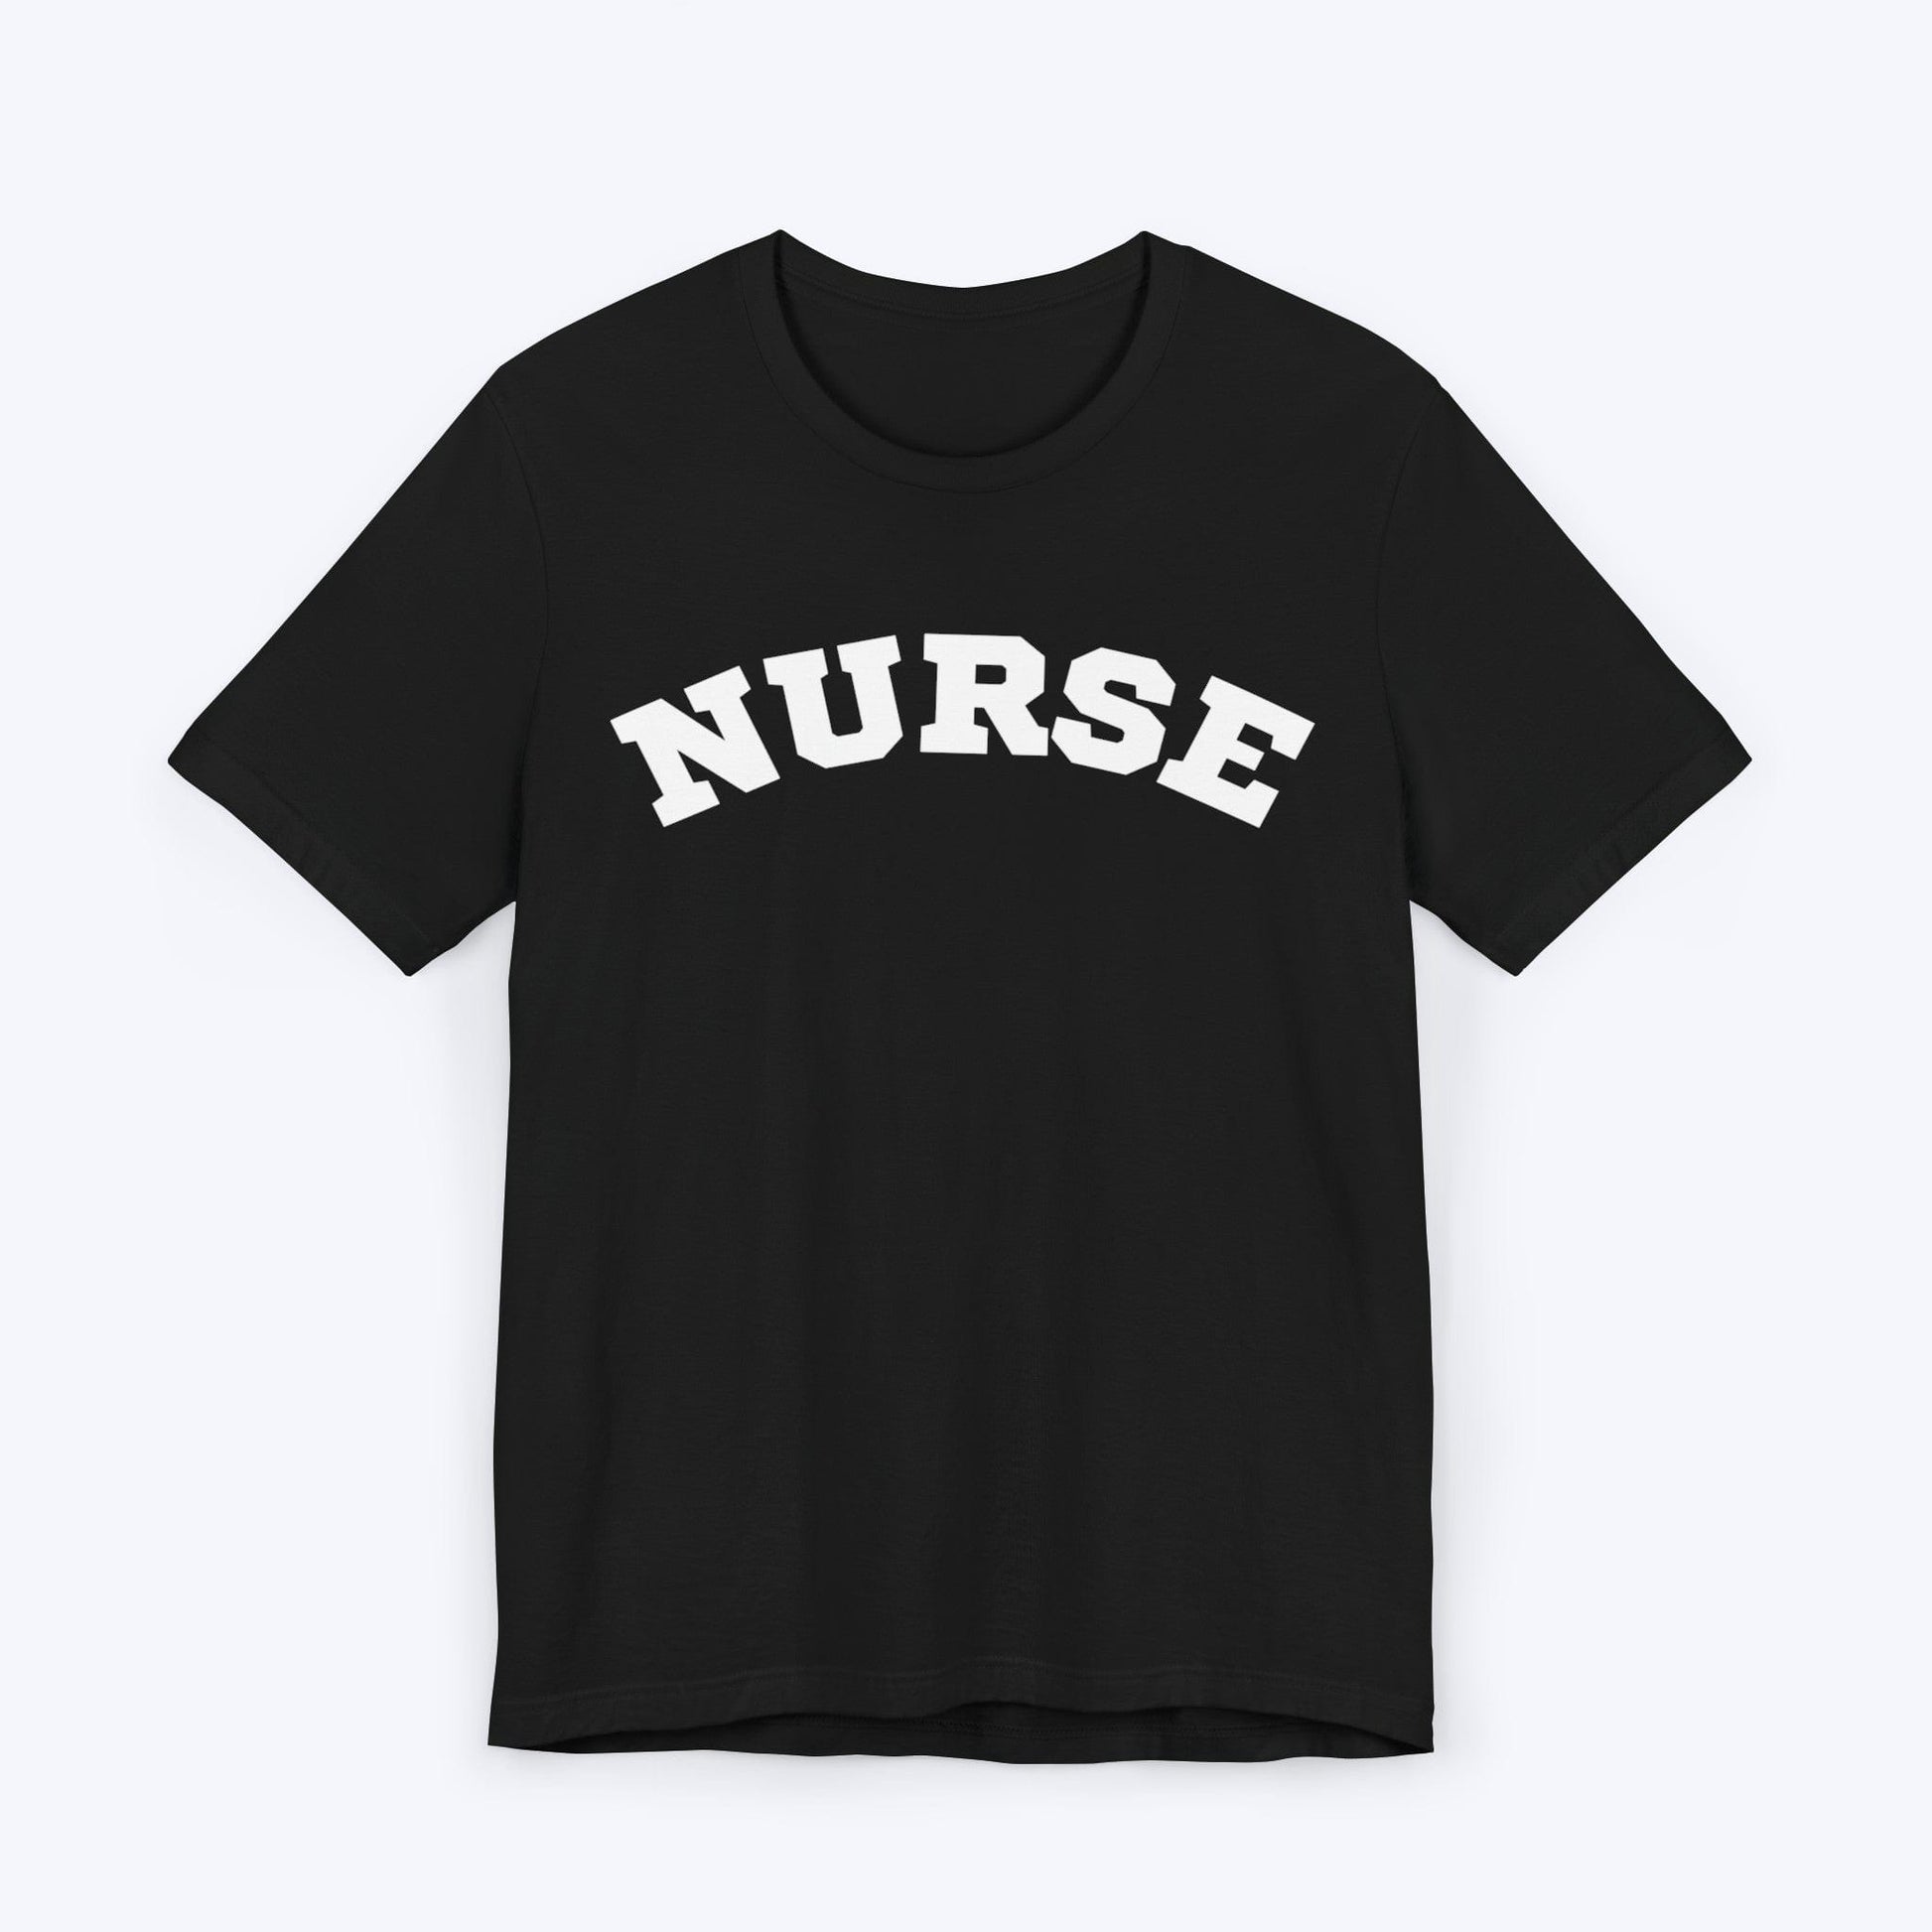 T-Shirt Black / S University Nurse T-shirt